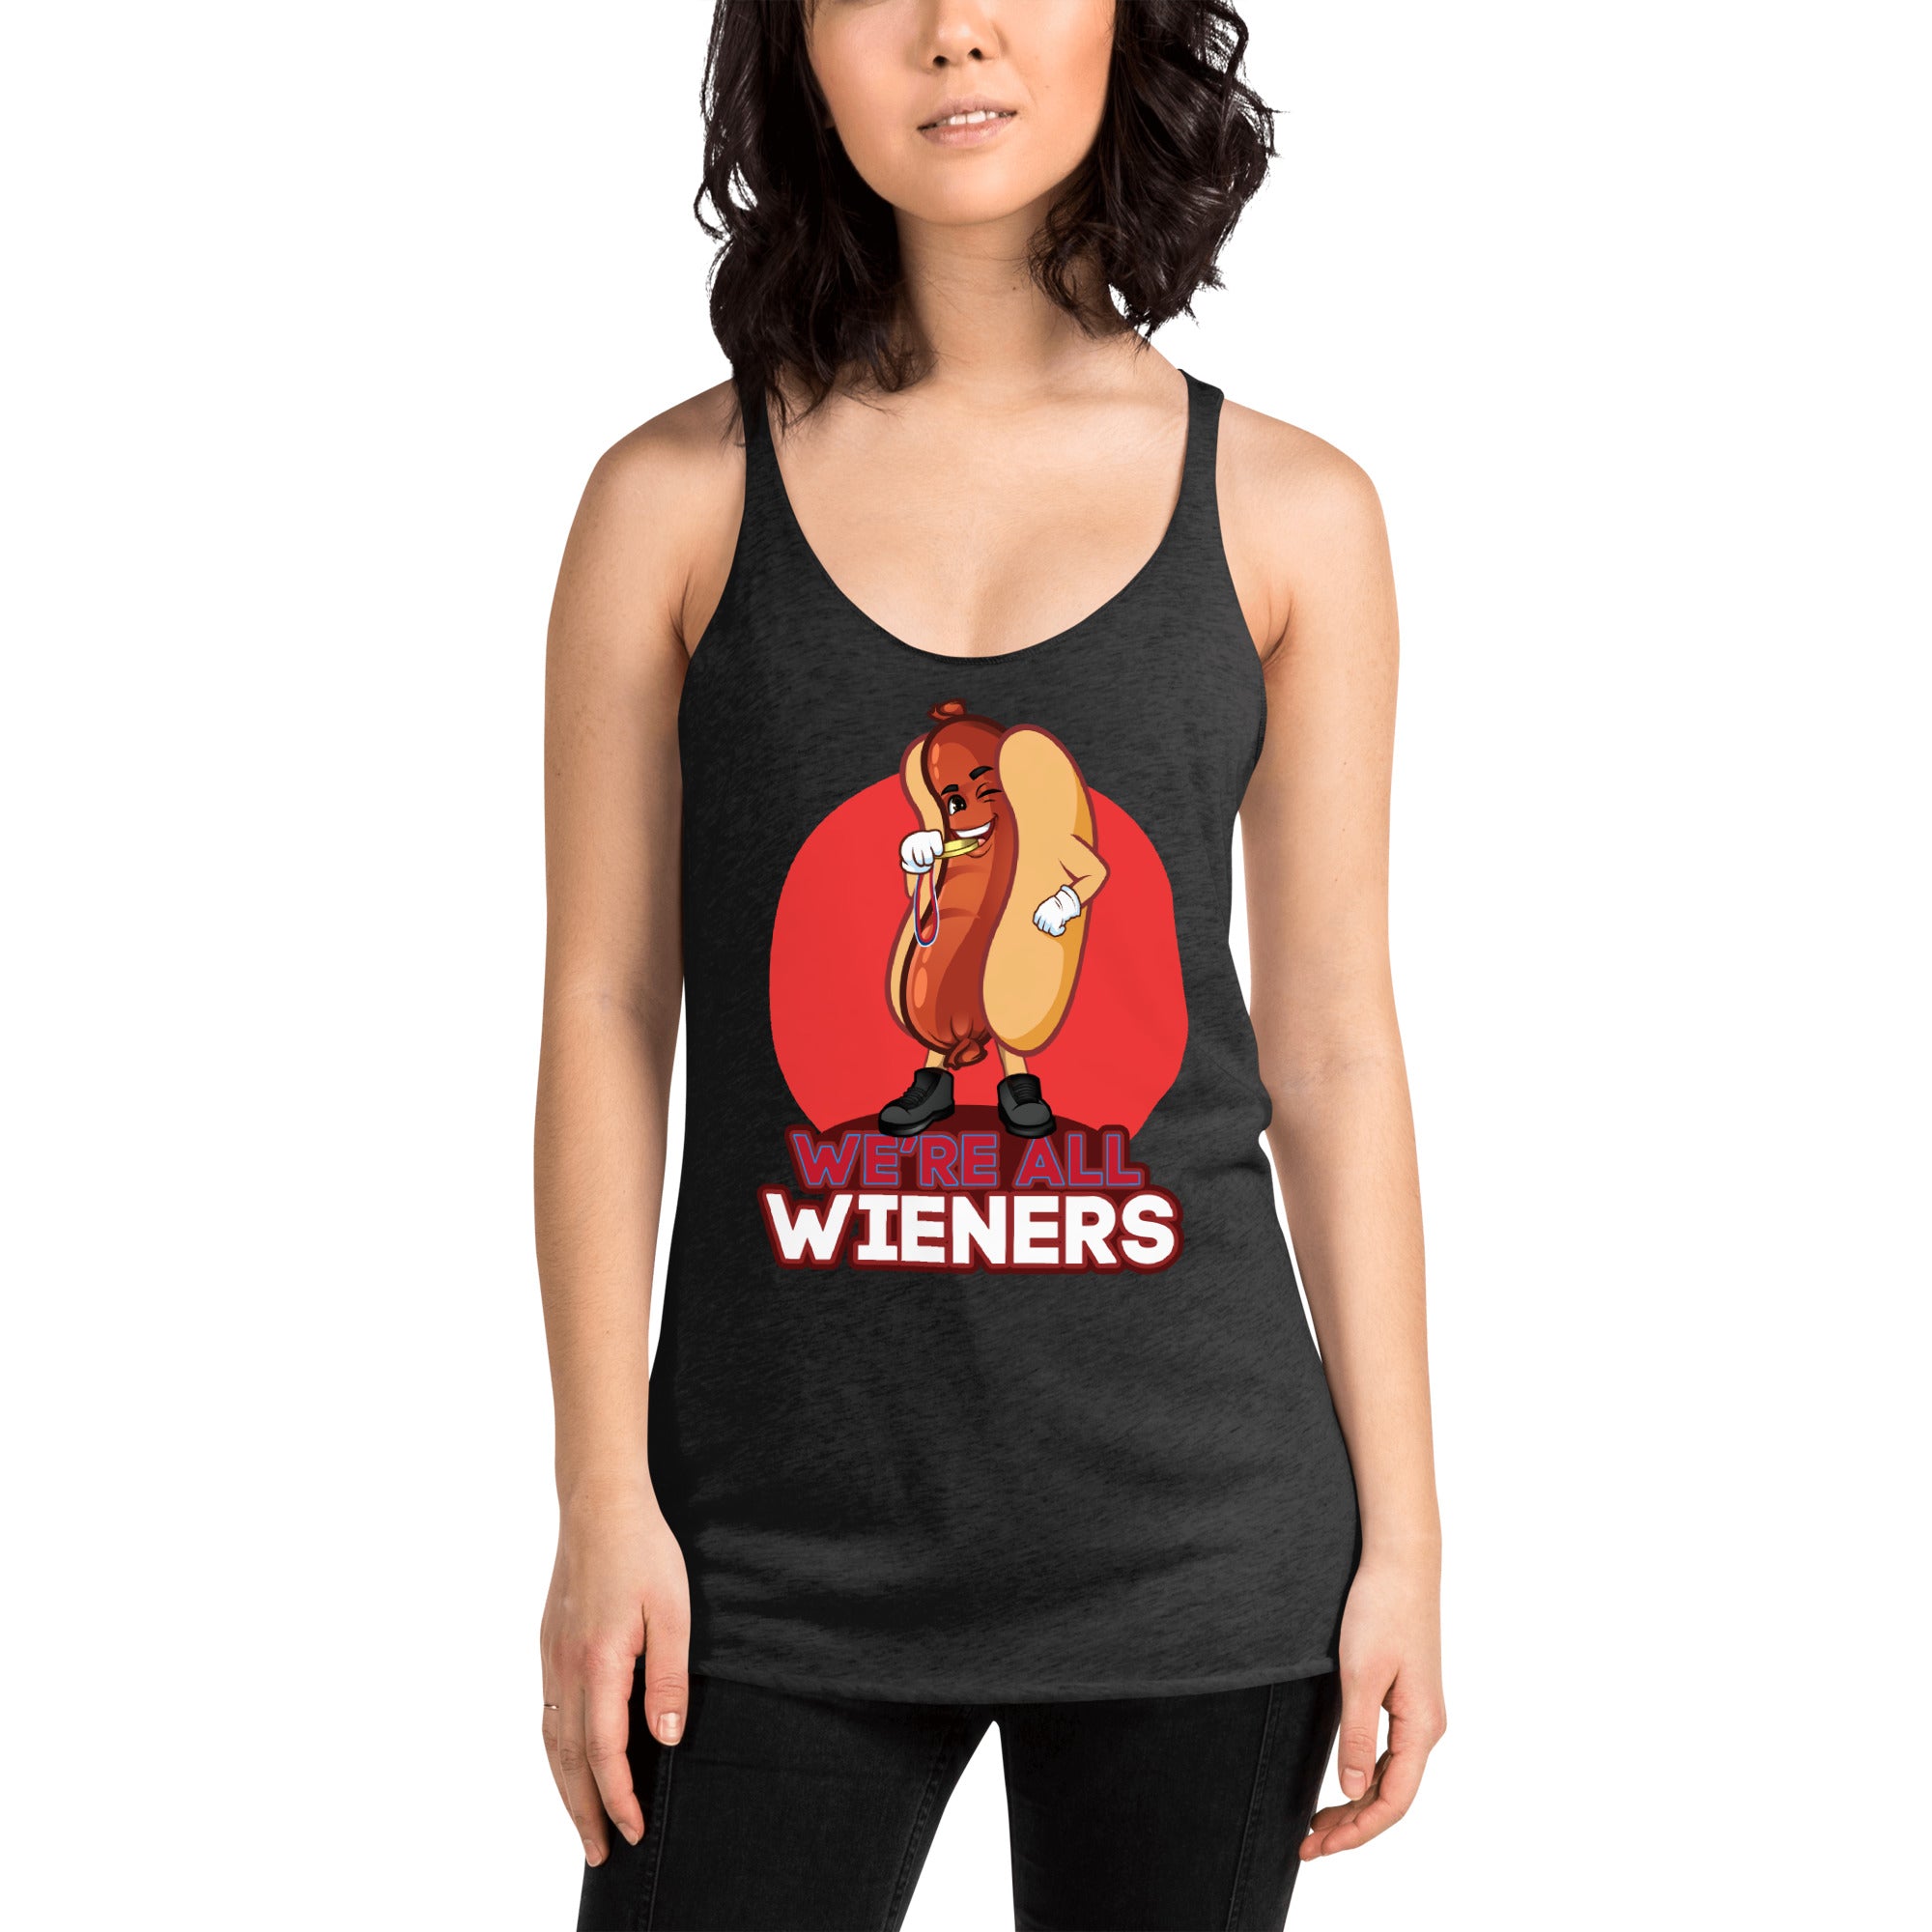 We're All Wieners Women's Racerback Tank - Red